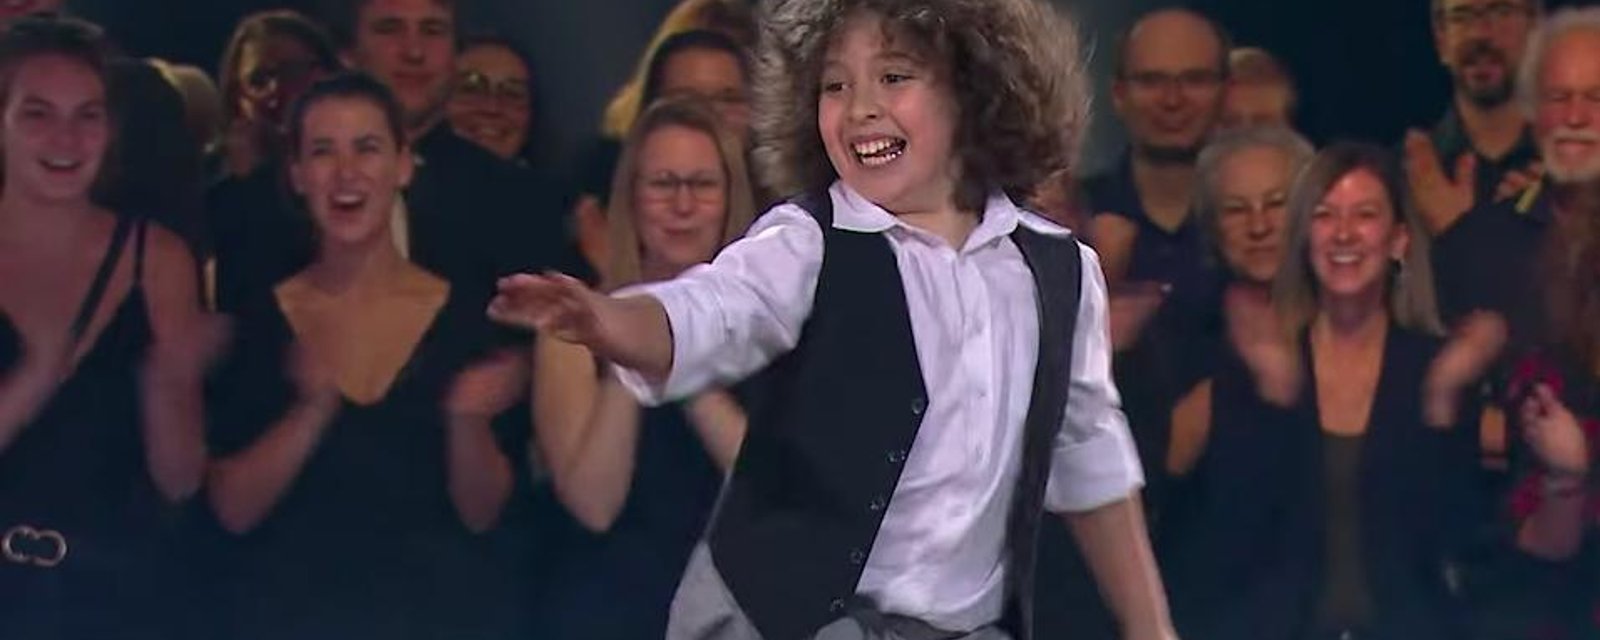 À VOIR: Un danseur de 9 ans nous offre une prestation absolument spectaculaire à Révolution